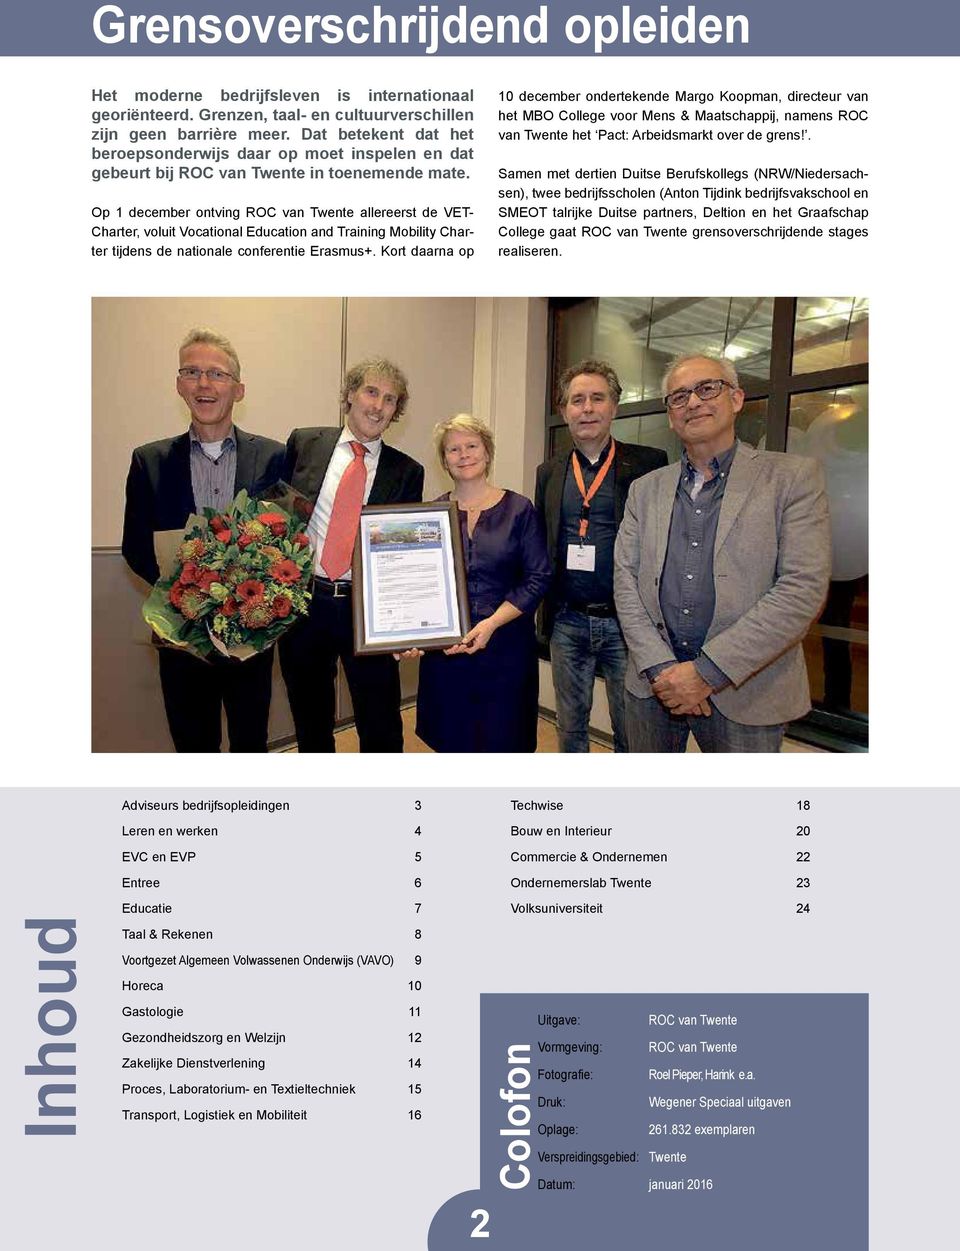 Op 1 december ontving ROC van Twente allereerst de VET- Charter, voluit Vocational Education and Training Mobility Charter tijdens de nationale conferentie Erasmus+.